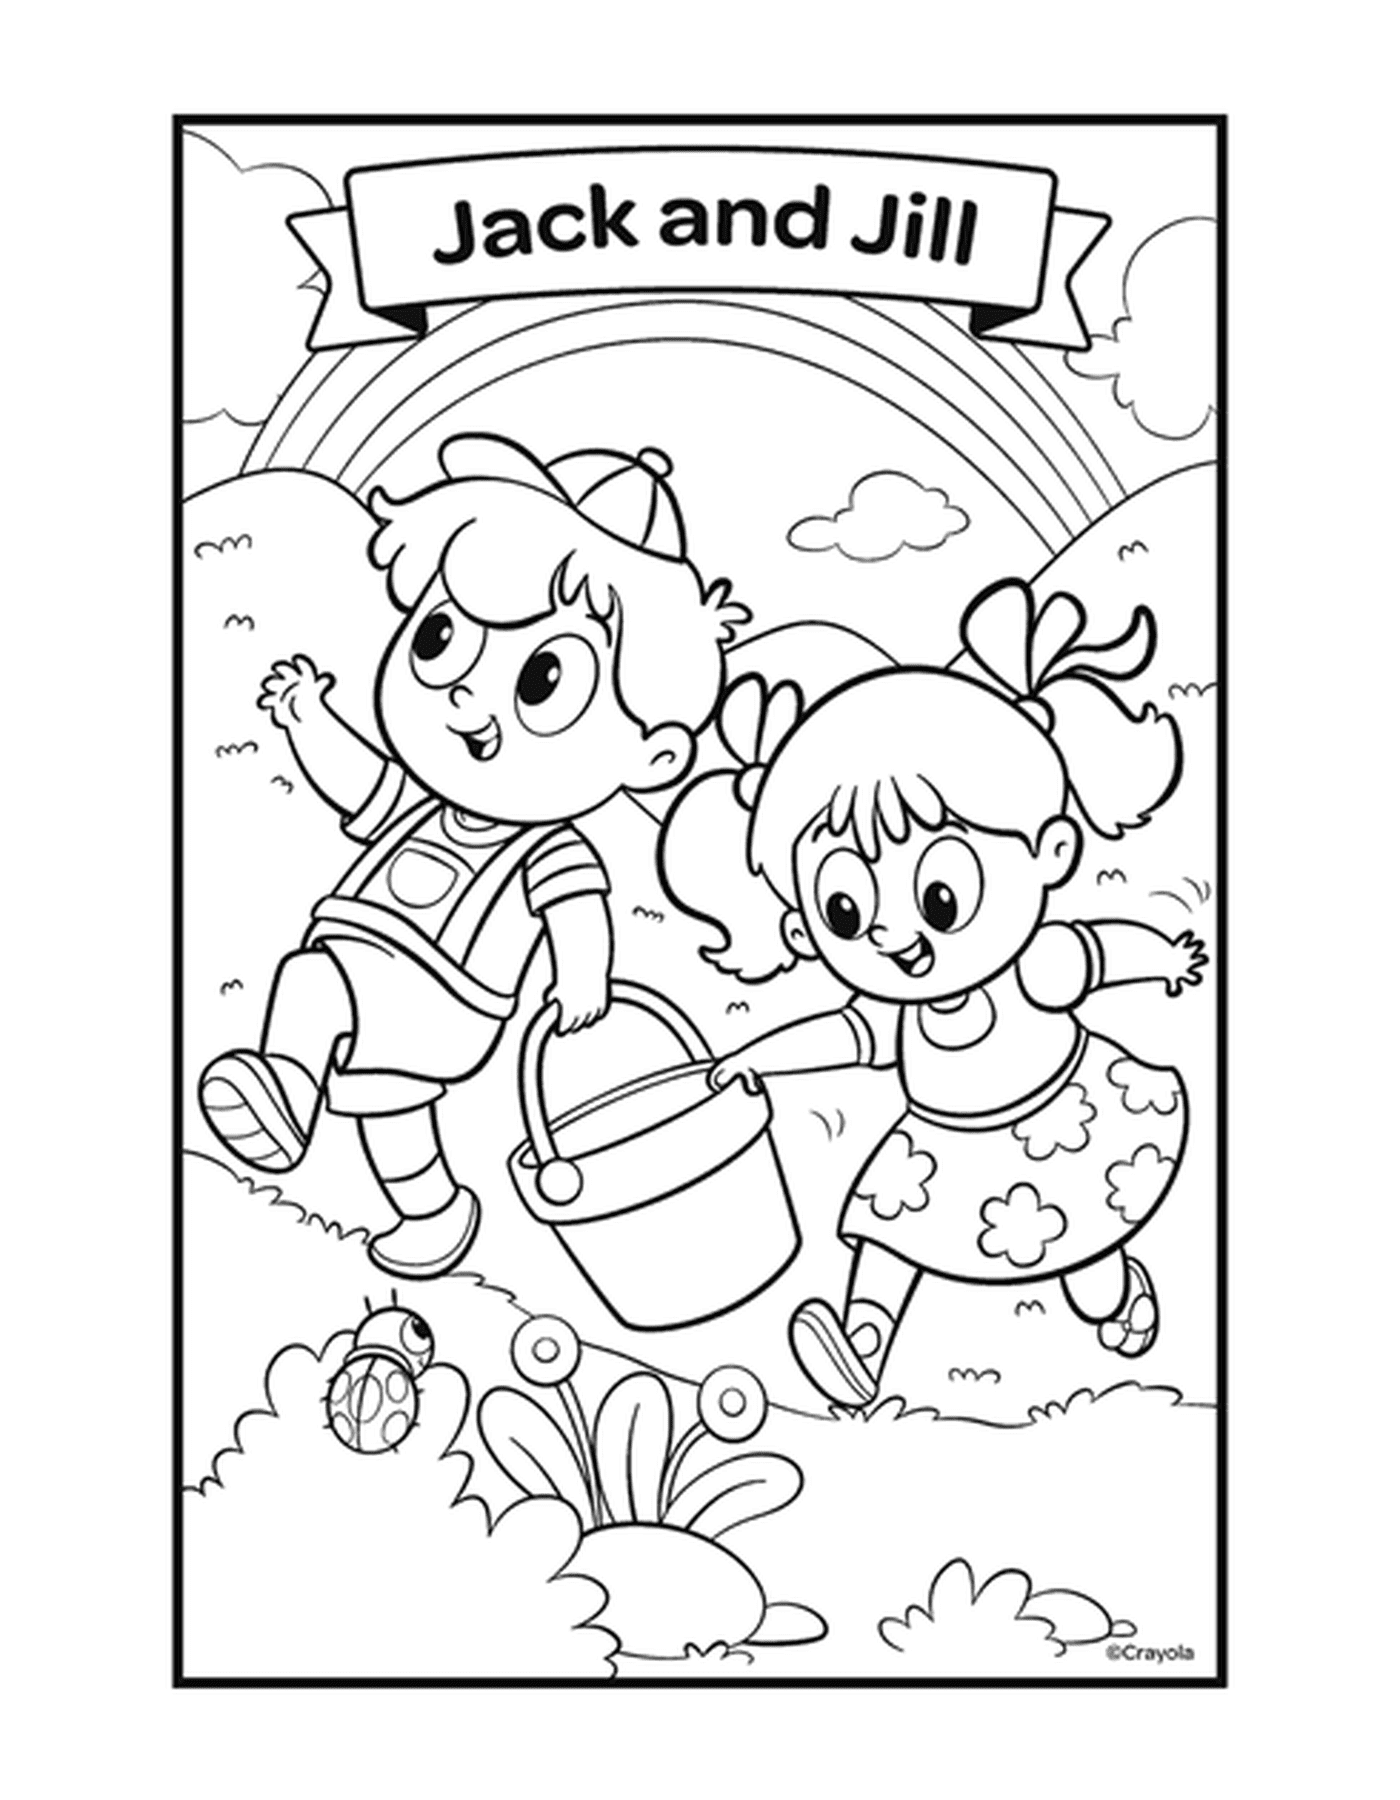  Jack e Jill com duas crianças brincando com um balde 